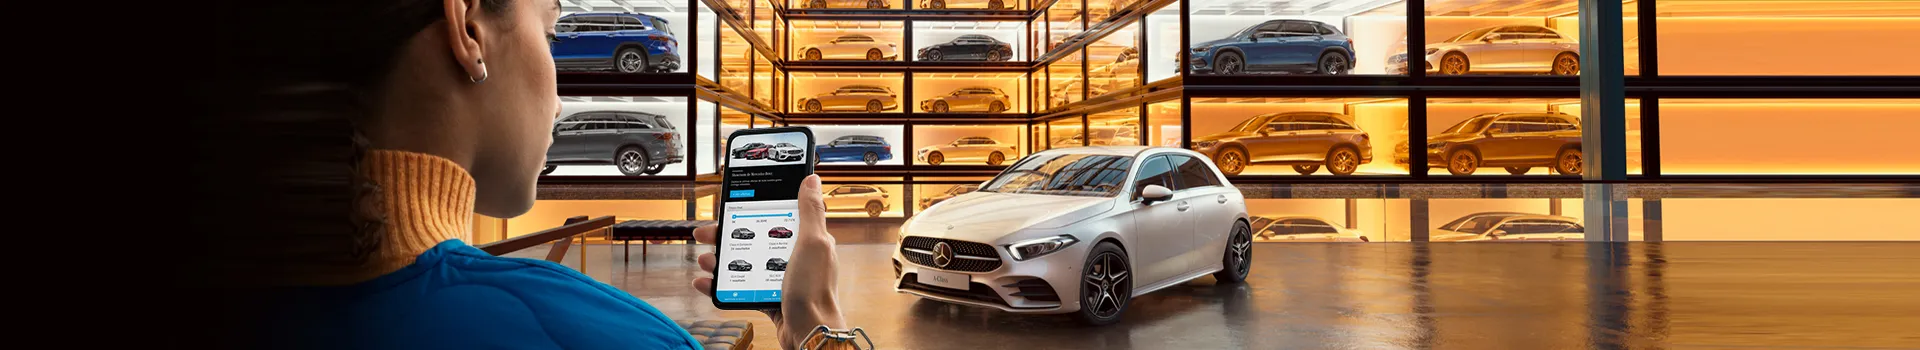 Mujer viendo en el smartphone el Showroom de Mercedes Benz delante de un Mercedes Benz blanco